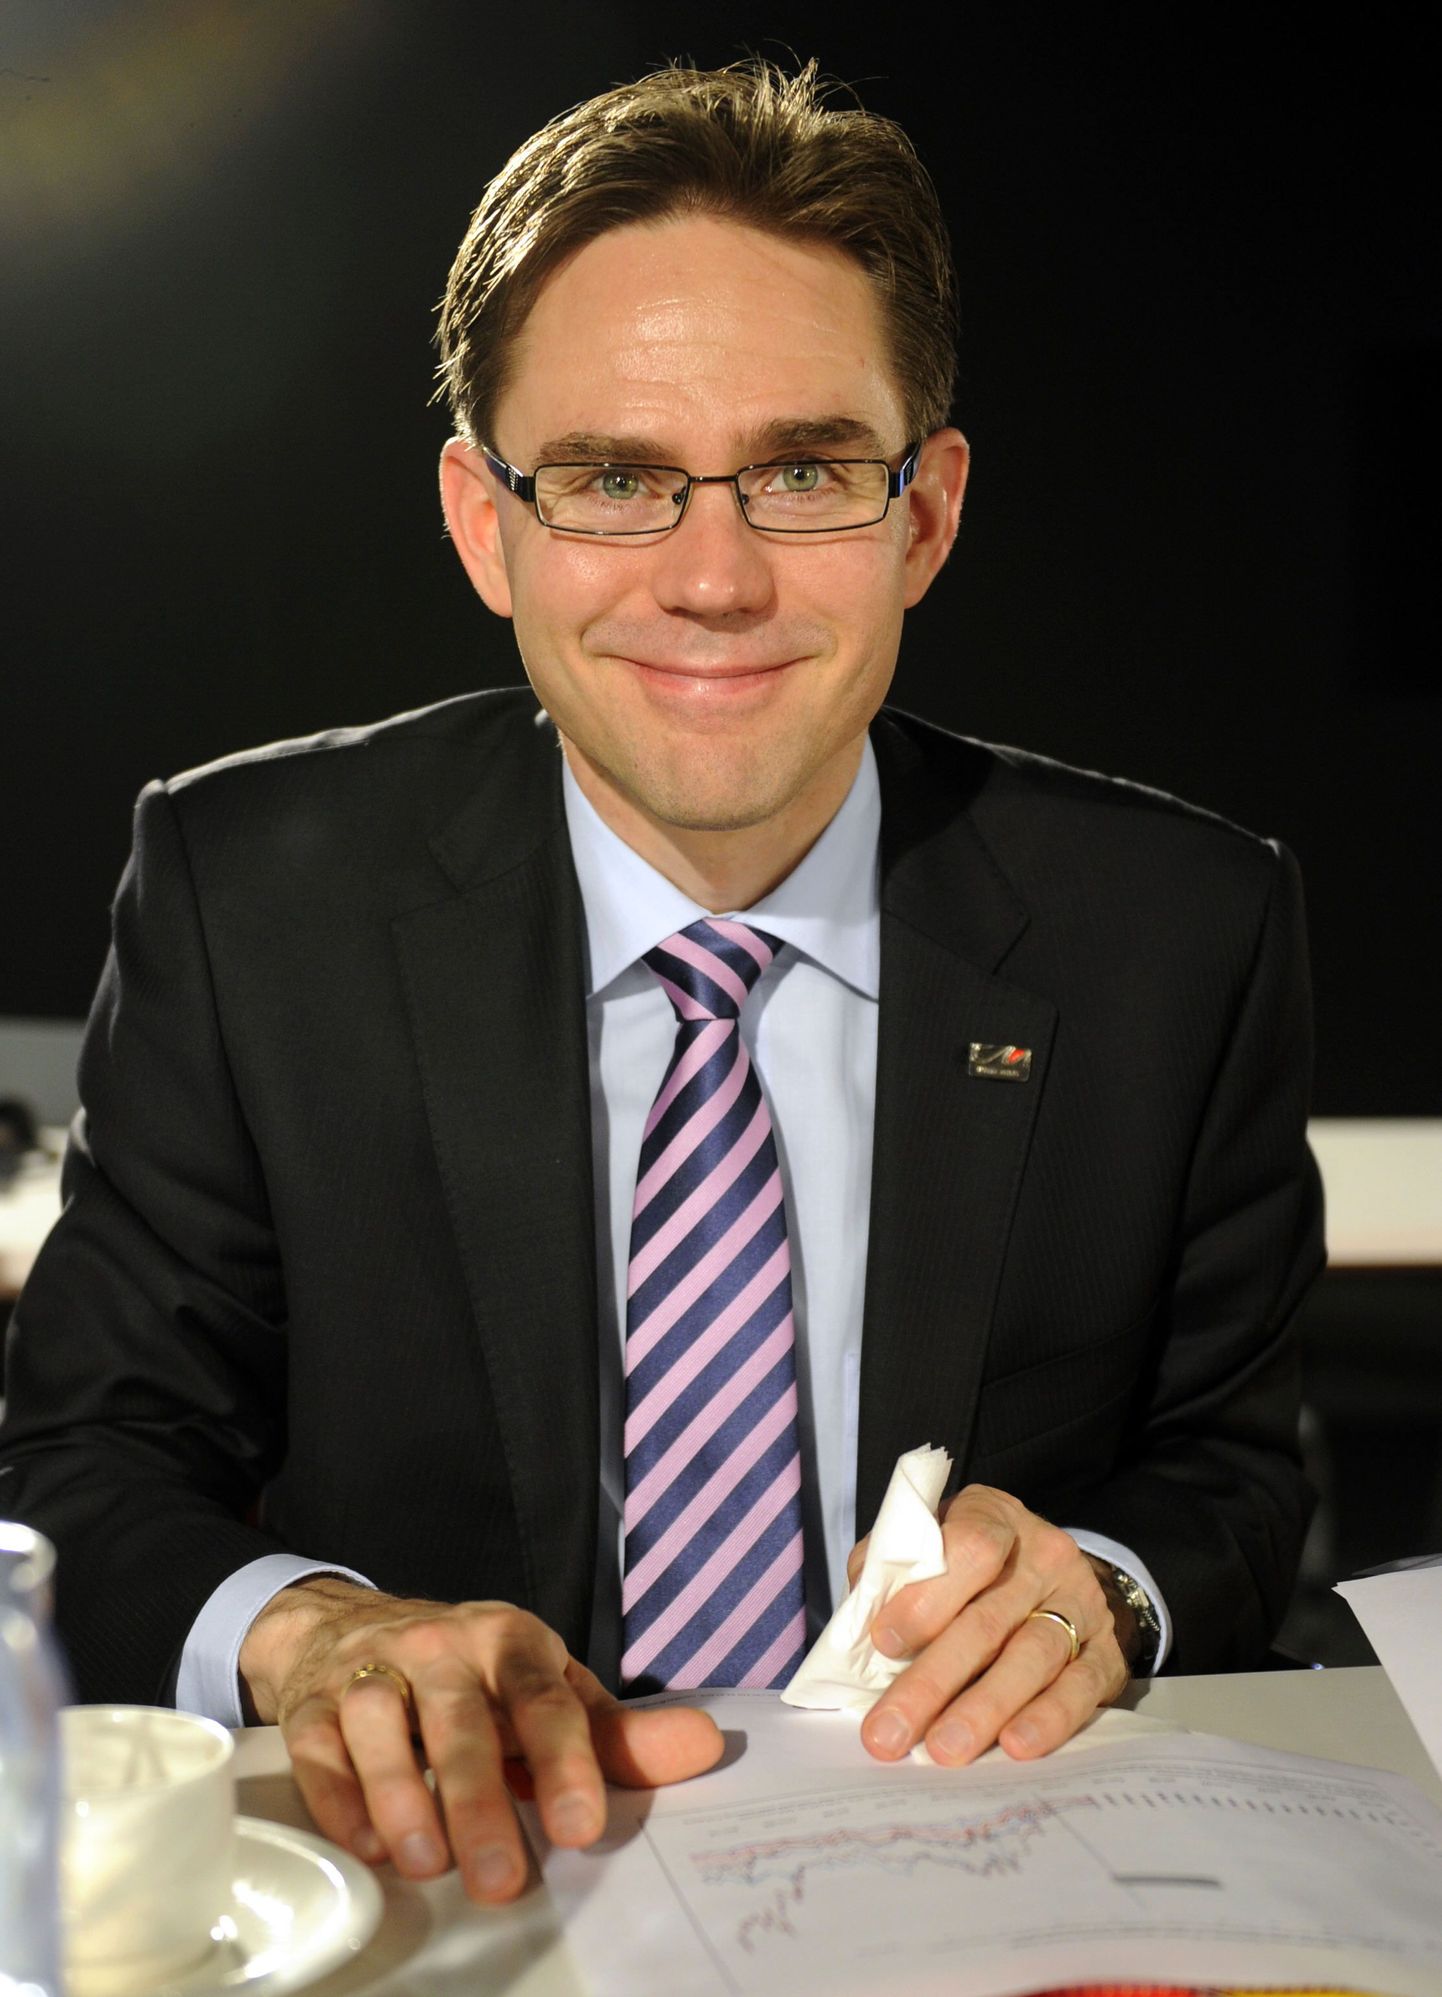 Soome rahandusminister Jyrki Katainen